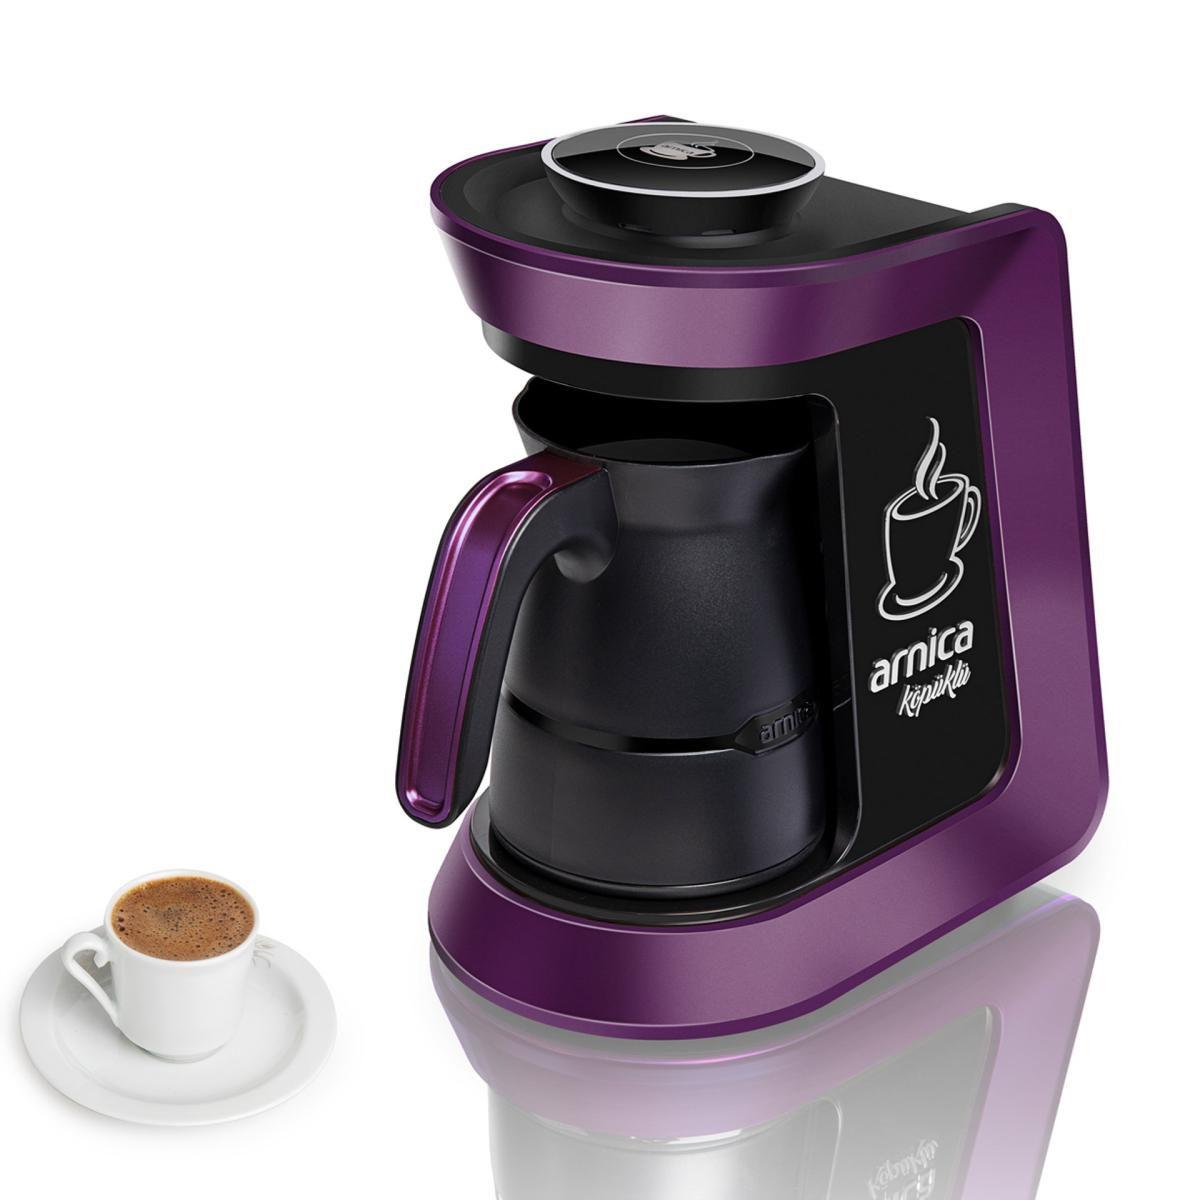 Arnica köpüklü otomatik türk kahve makinesi Mor (IH32054)